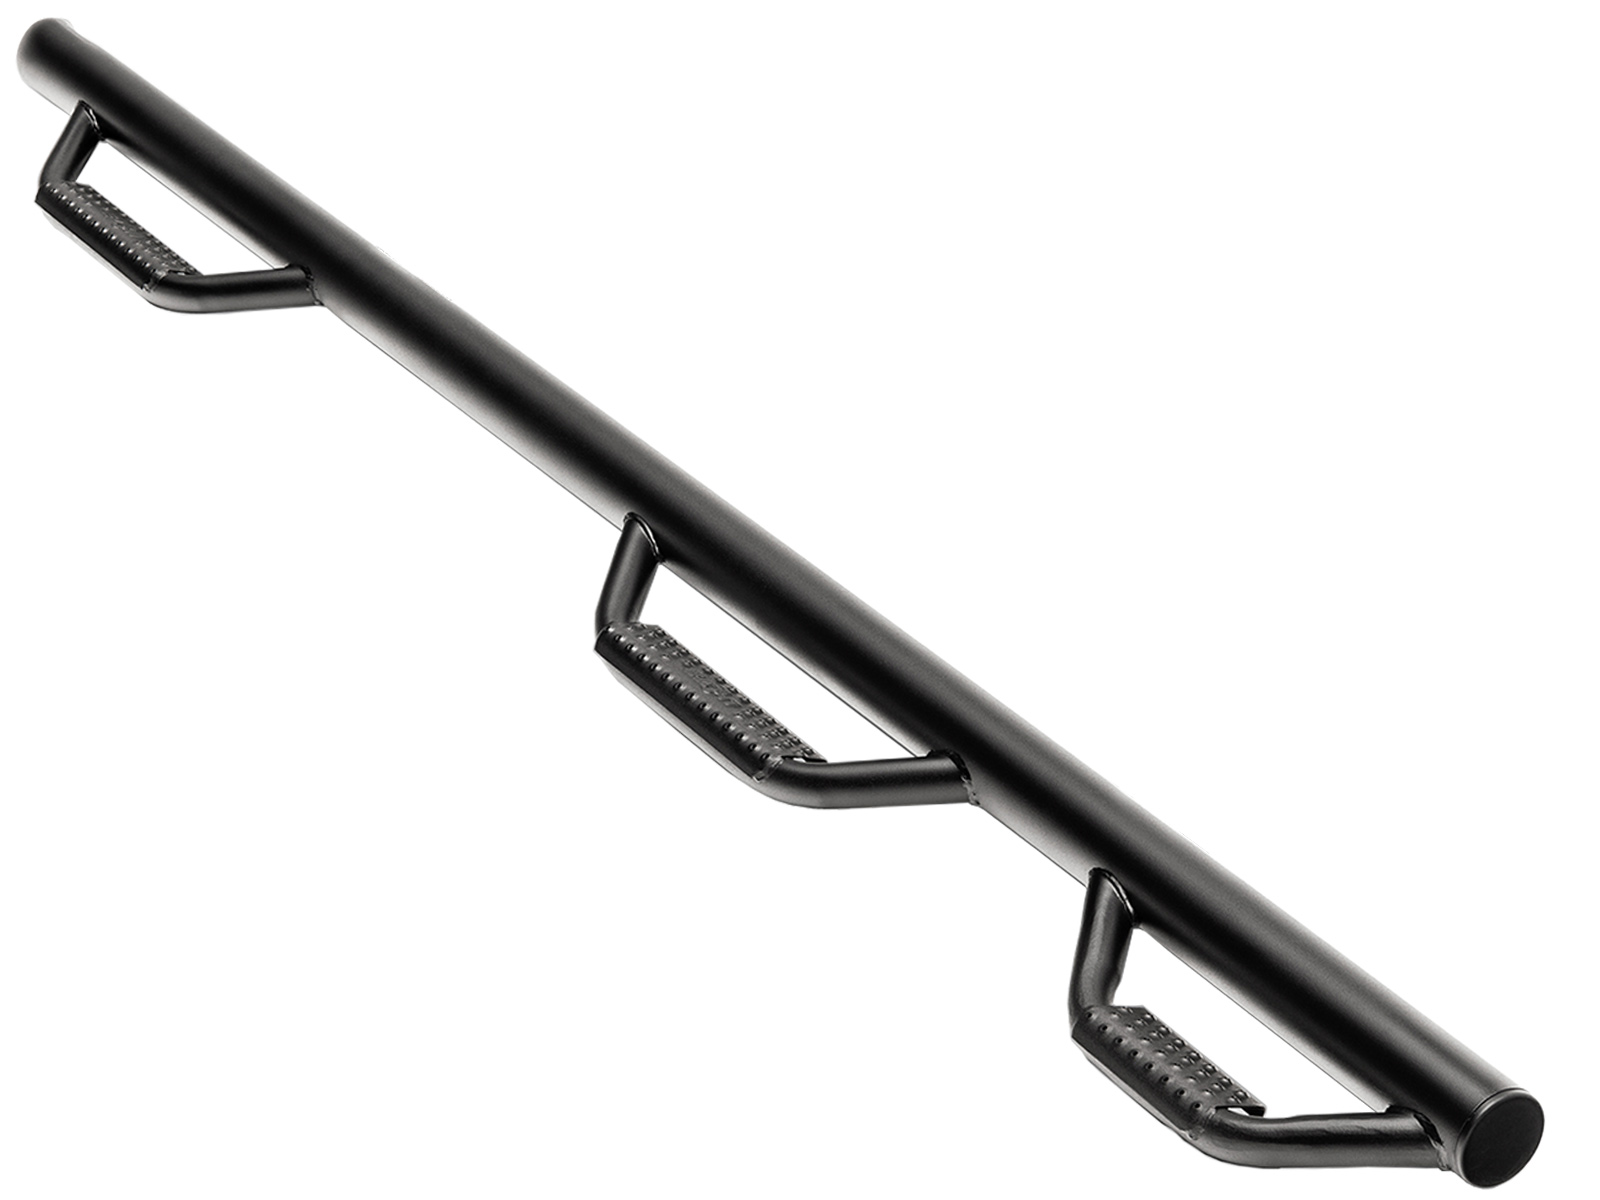 2019 GMC Sierra 2500 Nerf Bars | RealTruck